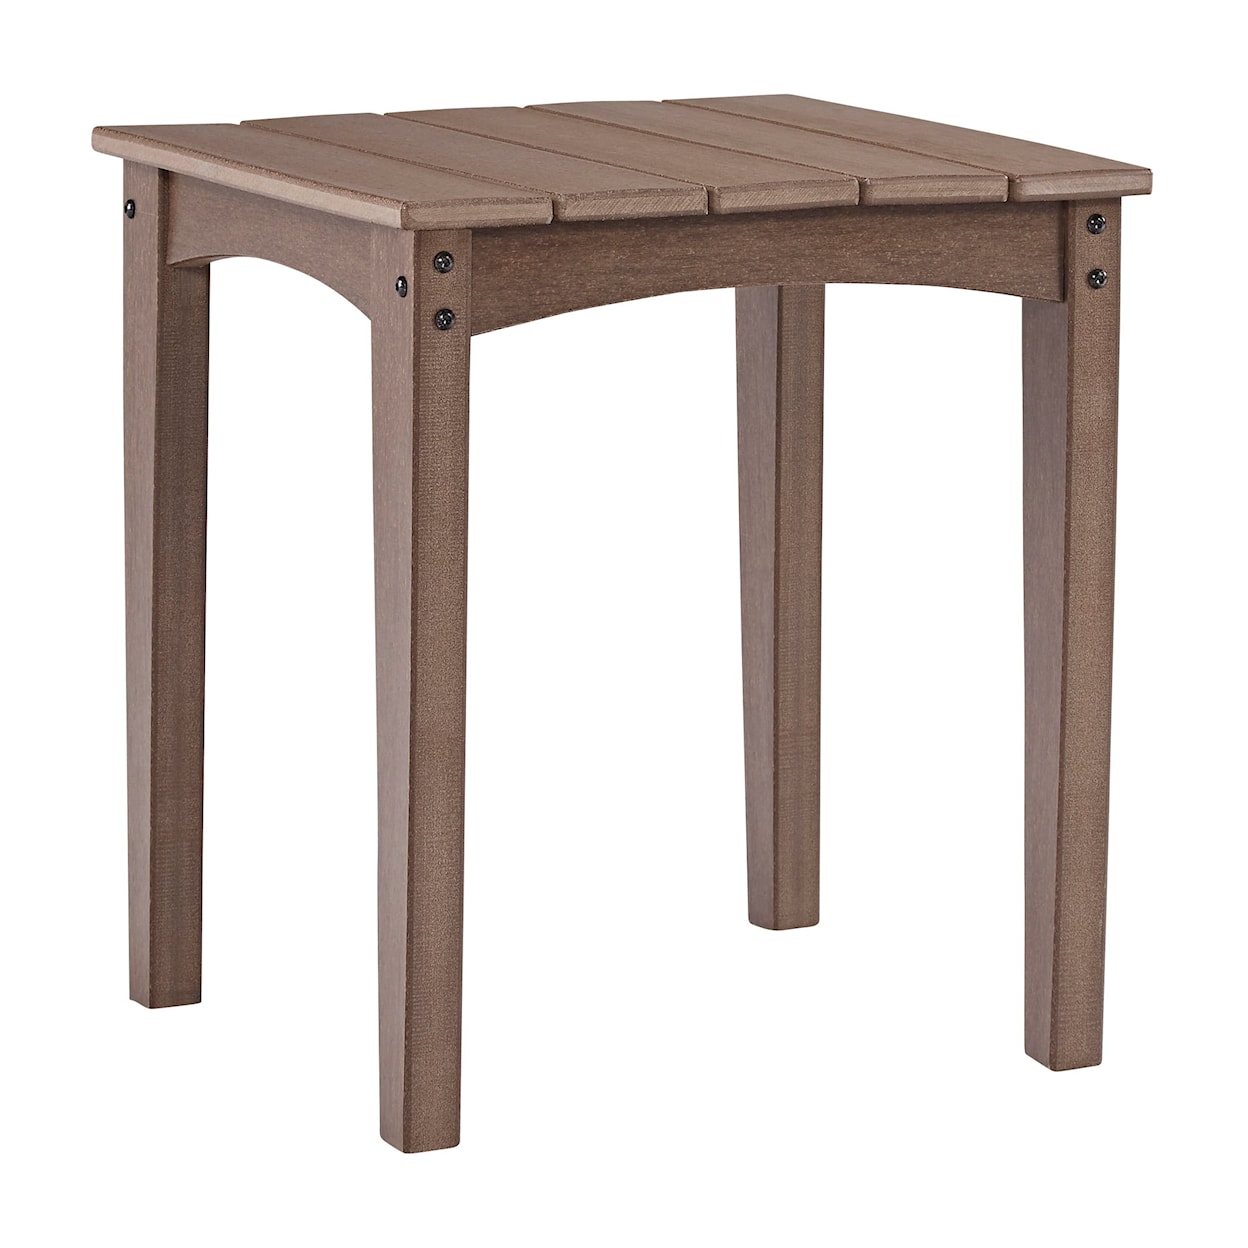 Ashley Furniture Signature Design Emmeline Outdoor End Table